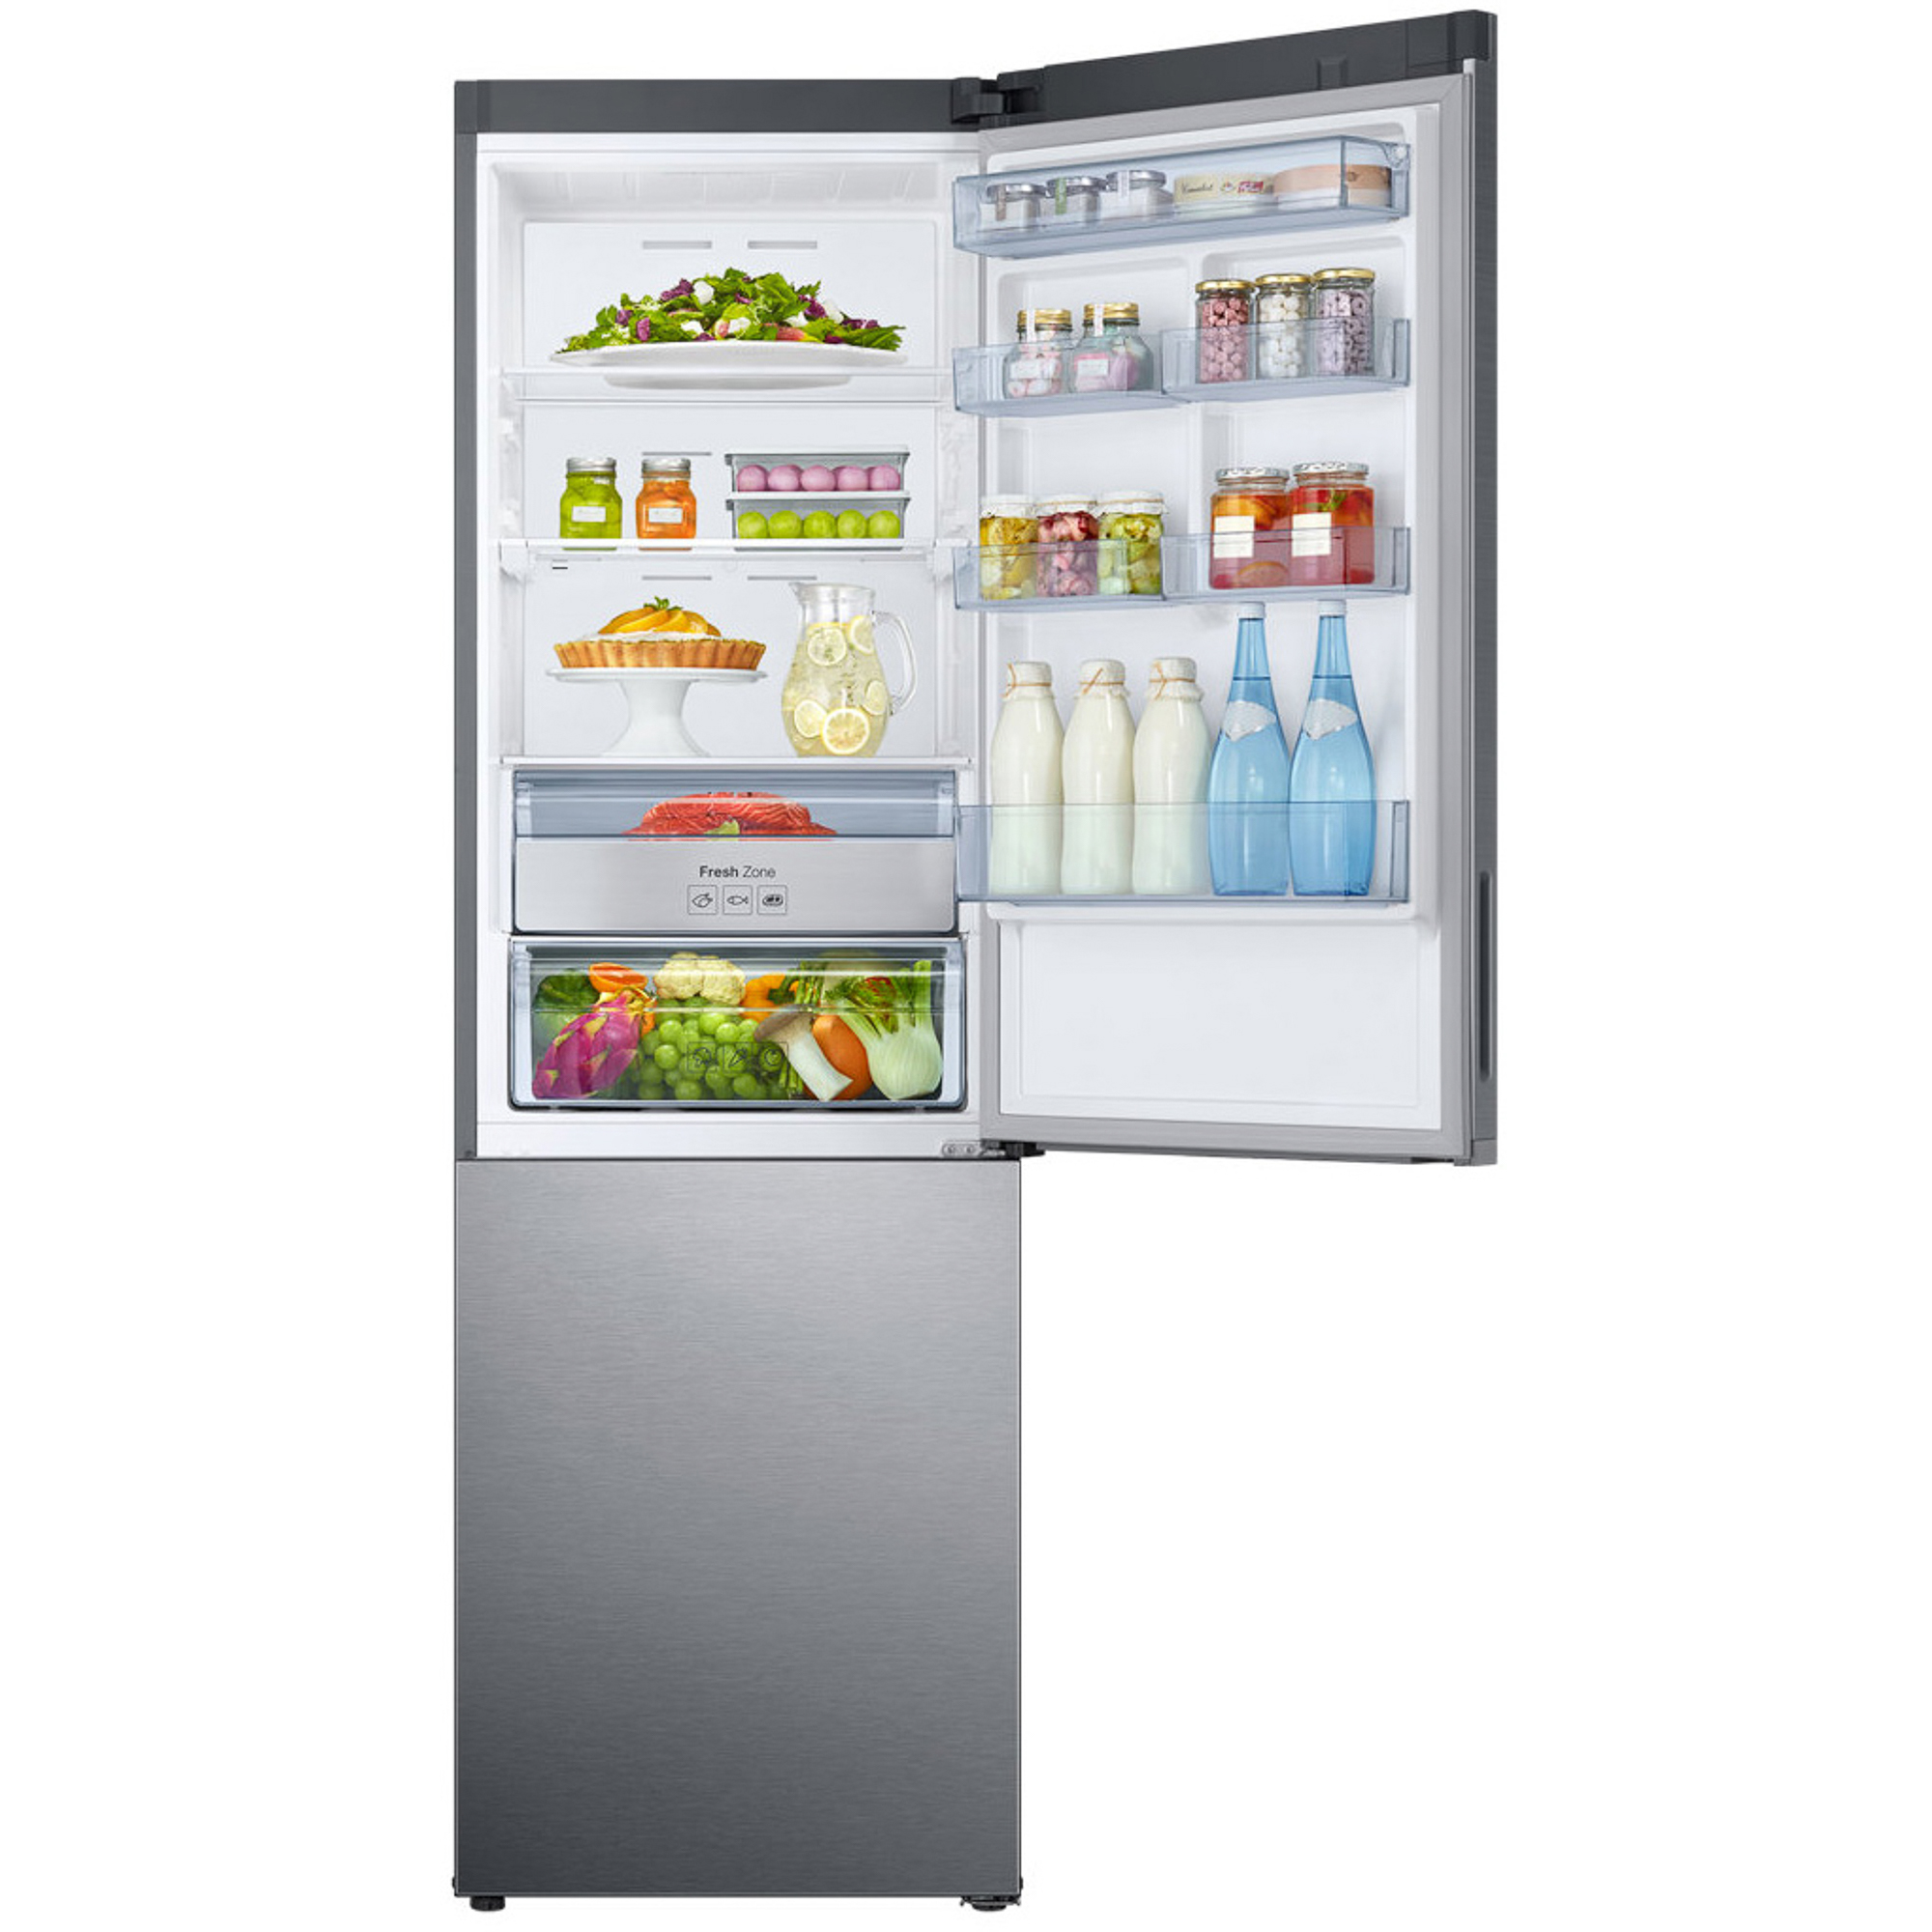 Холодильник Samsung RB34K6220S4 Silver, цвет серебристый RB34K6220S4/WT - фото 6